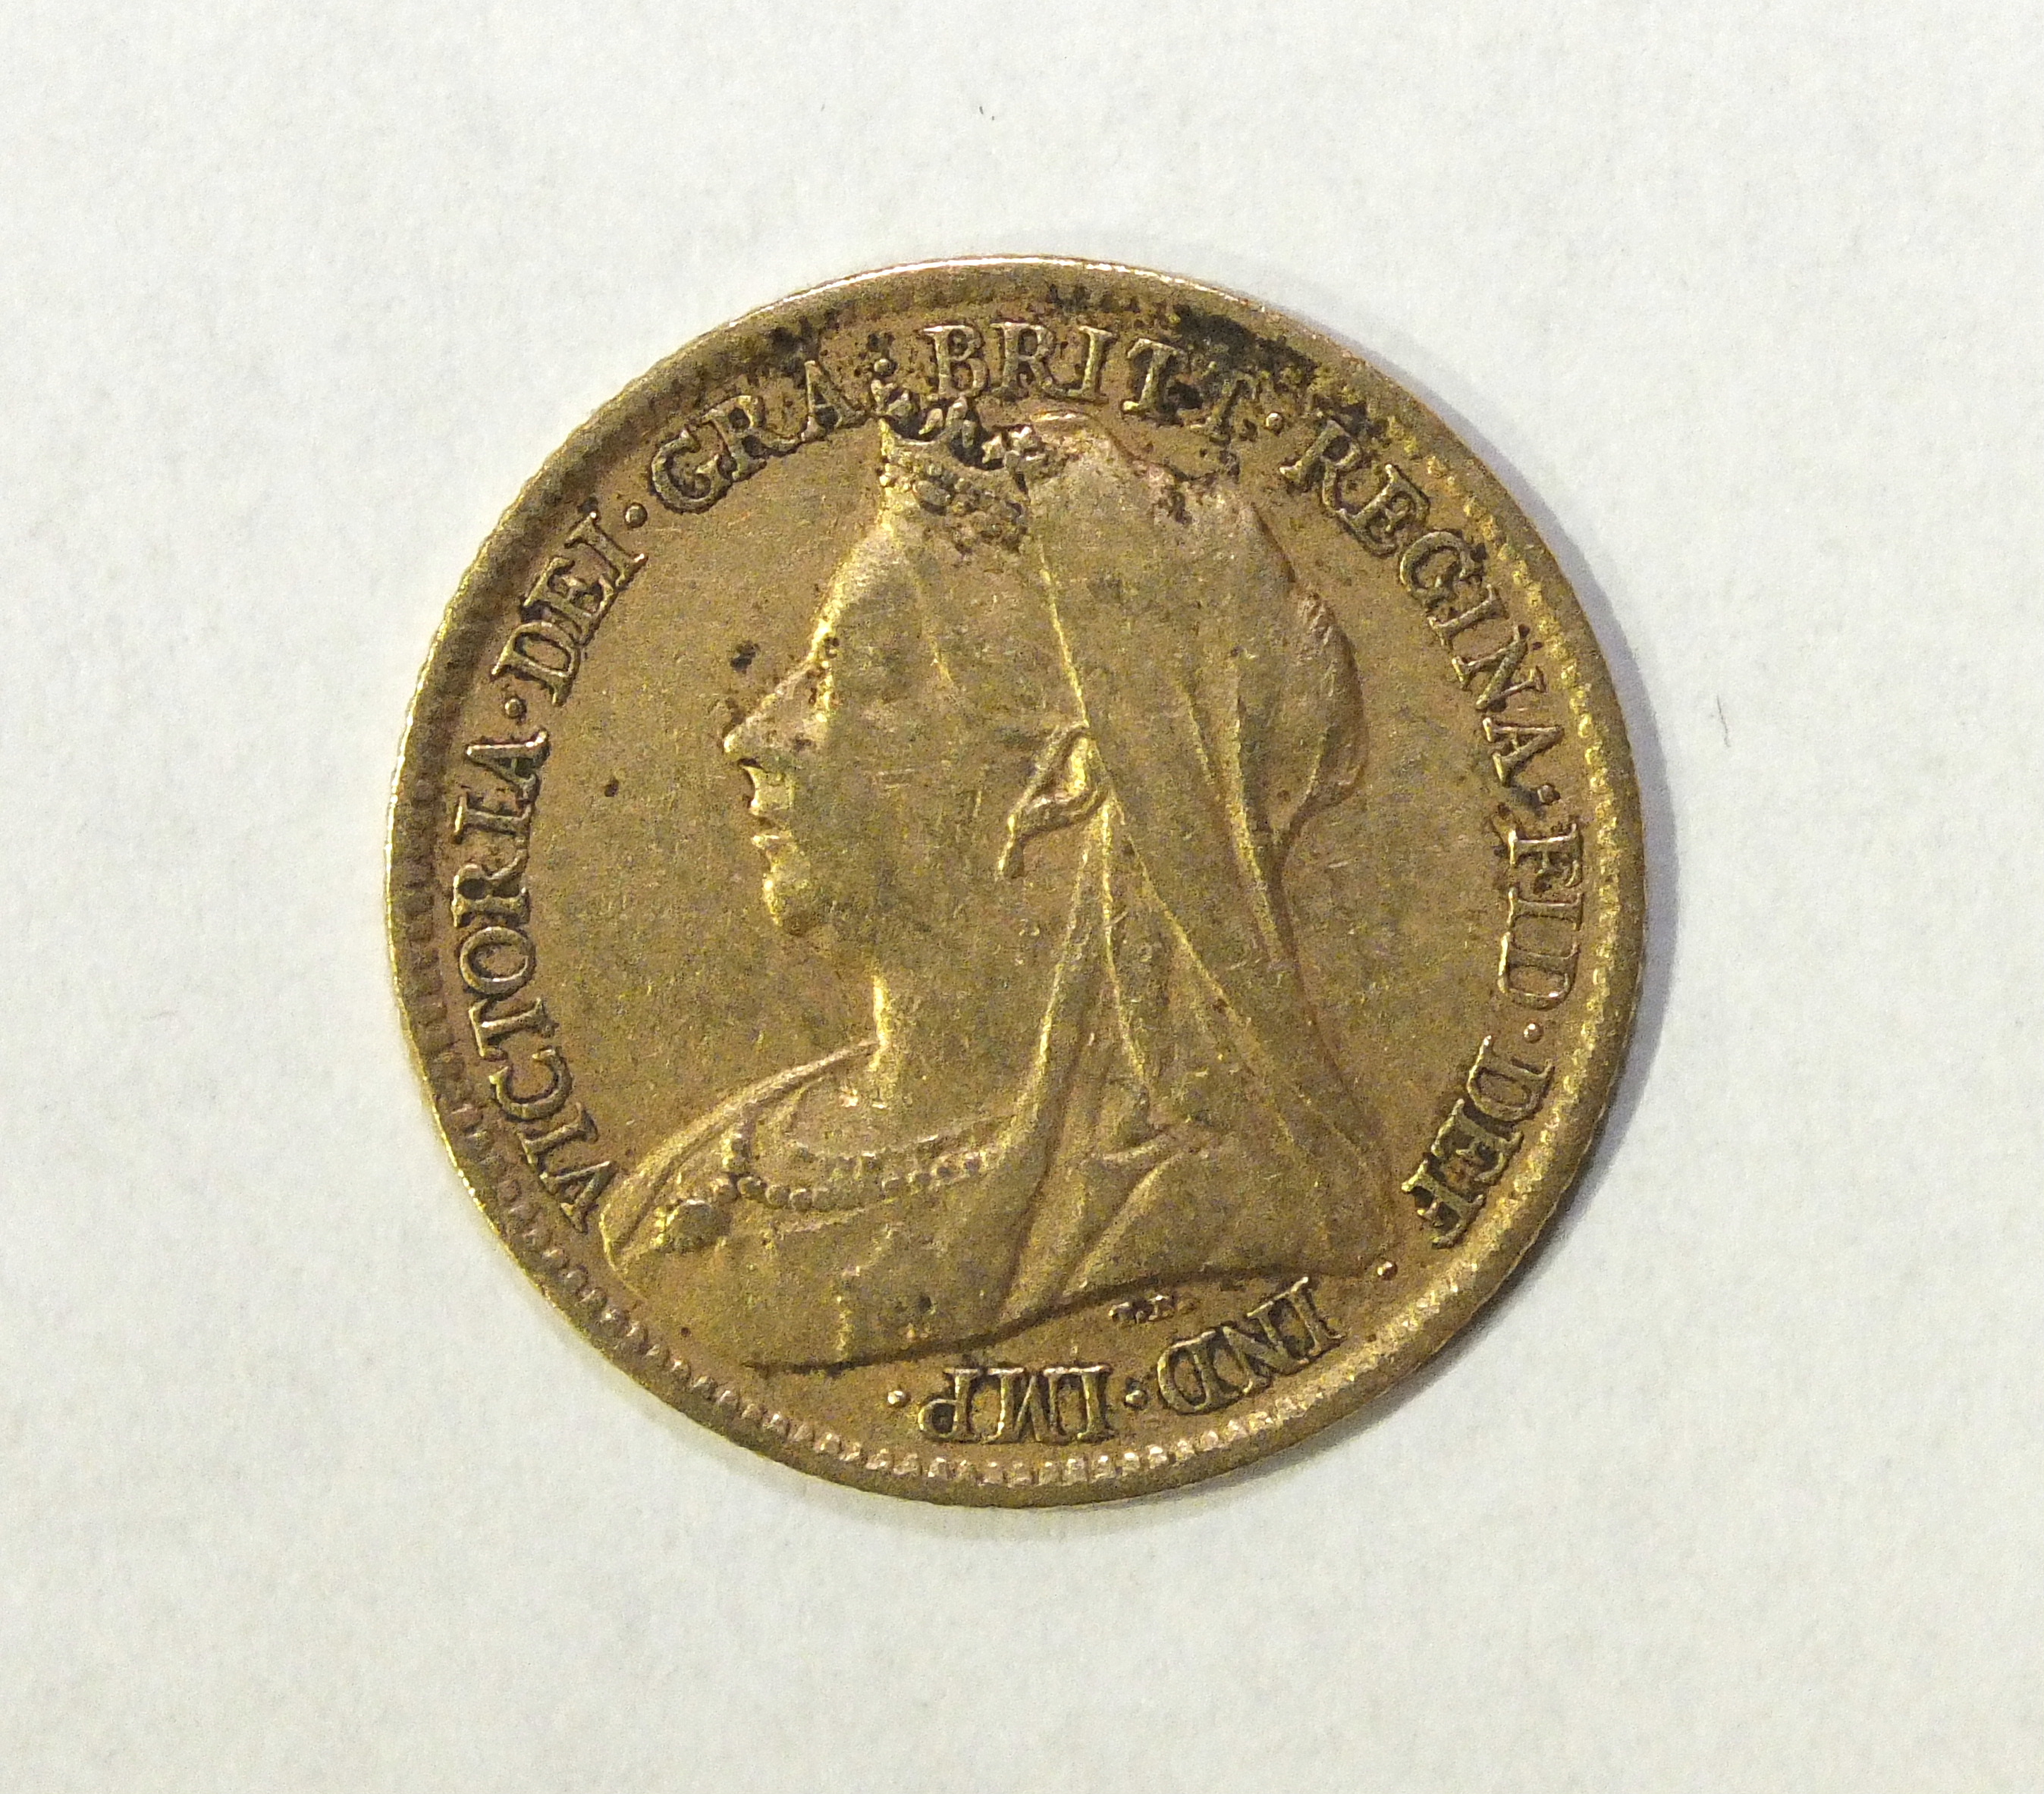 A Queen Victoria 1900 gold half sovereign.